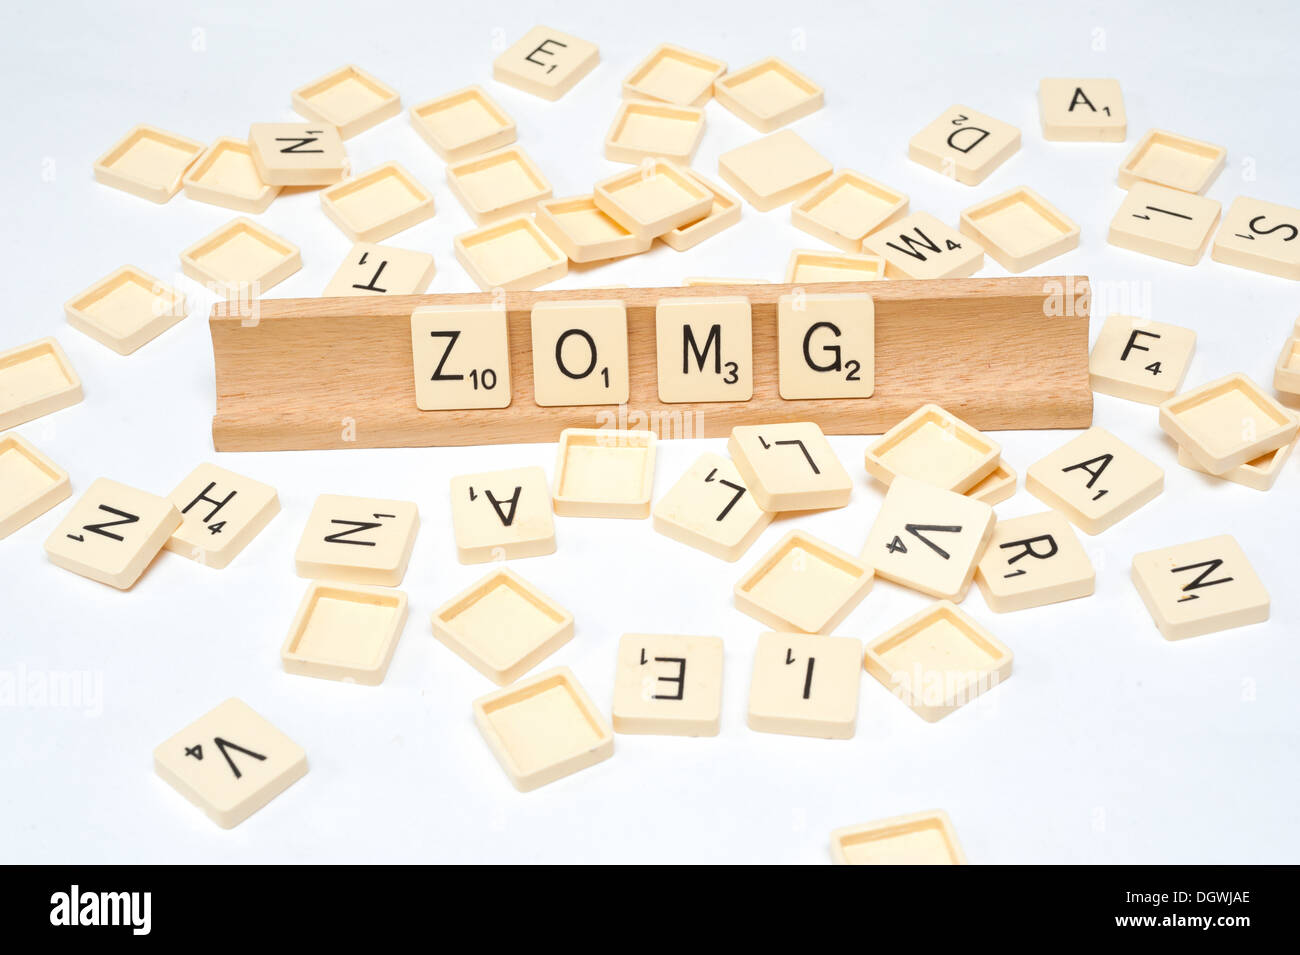 'ZOMG' written in scrabble tile Stock Photo